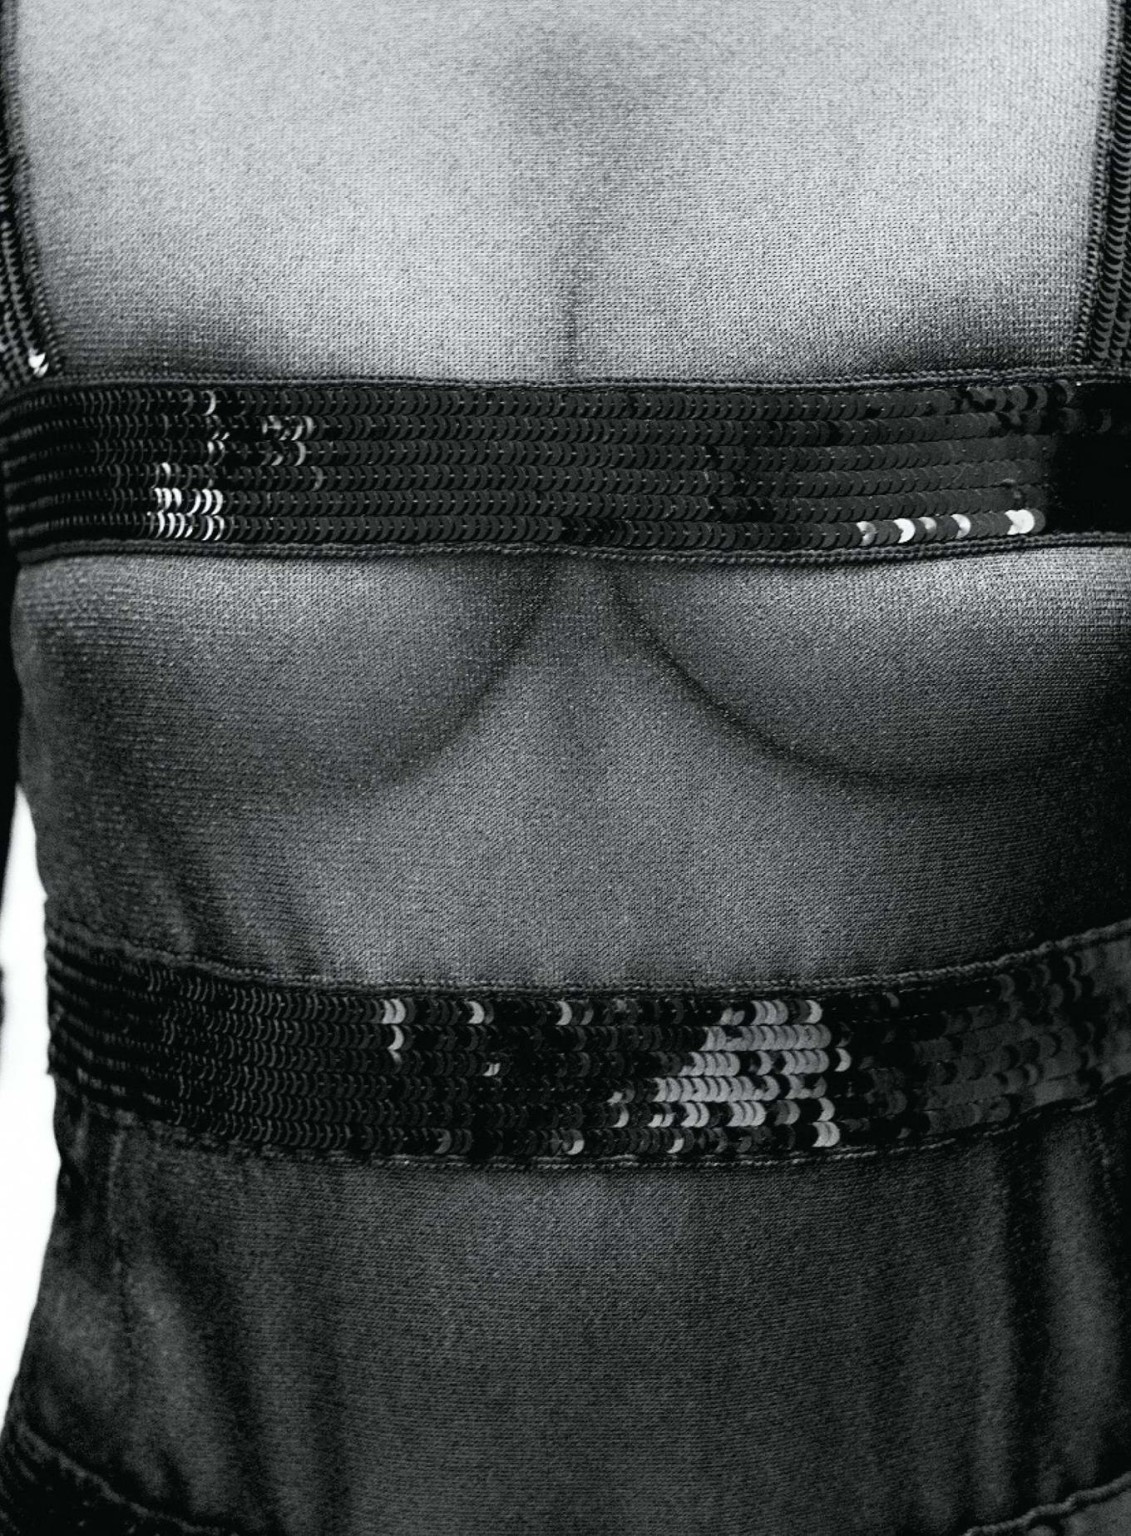 Edita vilkeviciute zeigt ihre großen Brüste im Flair Magazin Italien Mai 2015 ist
 #75165187